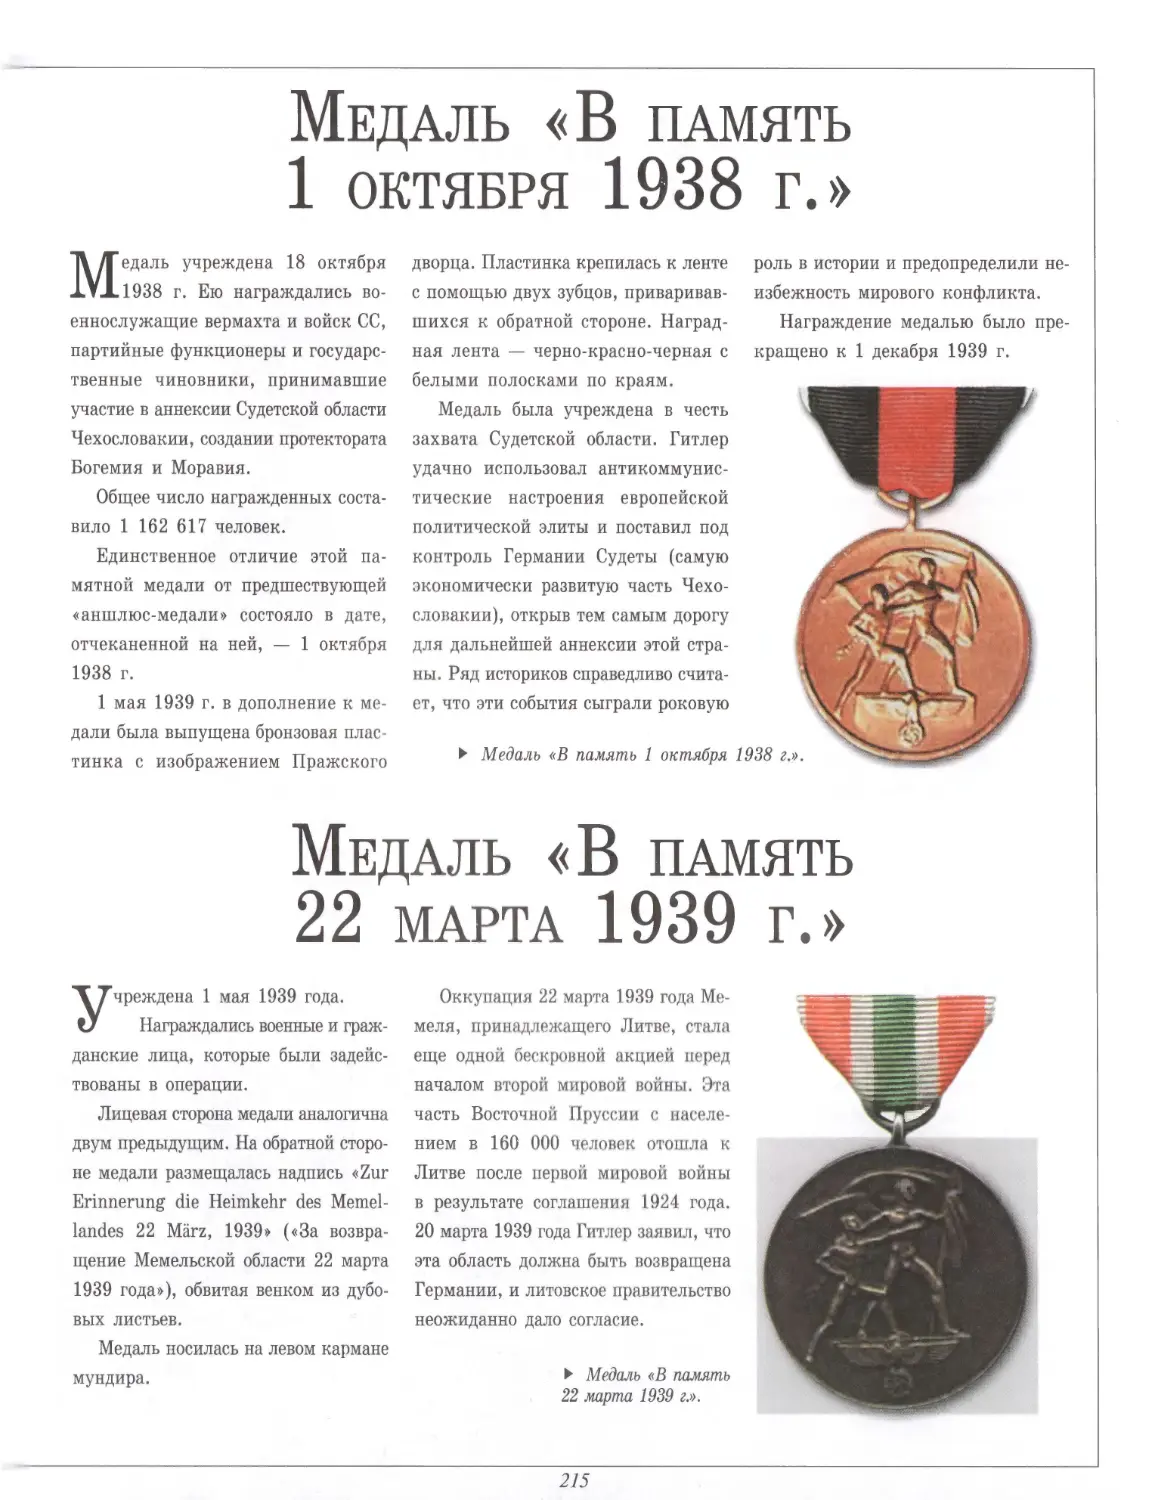 Медаль «В память 1 октября 1938 г.»
Медаль «В память 22 марта 1939 г.»